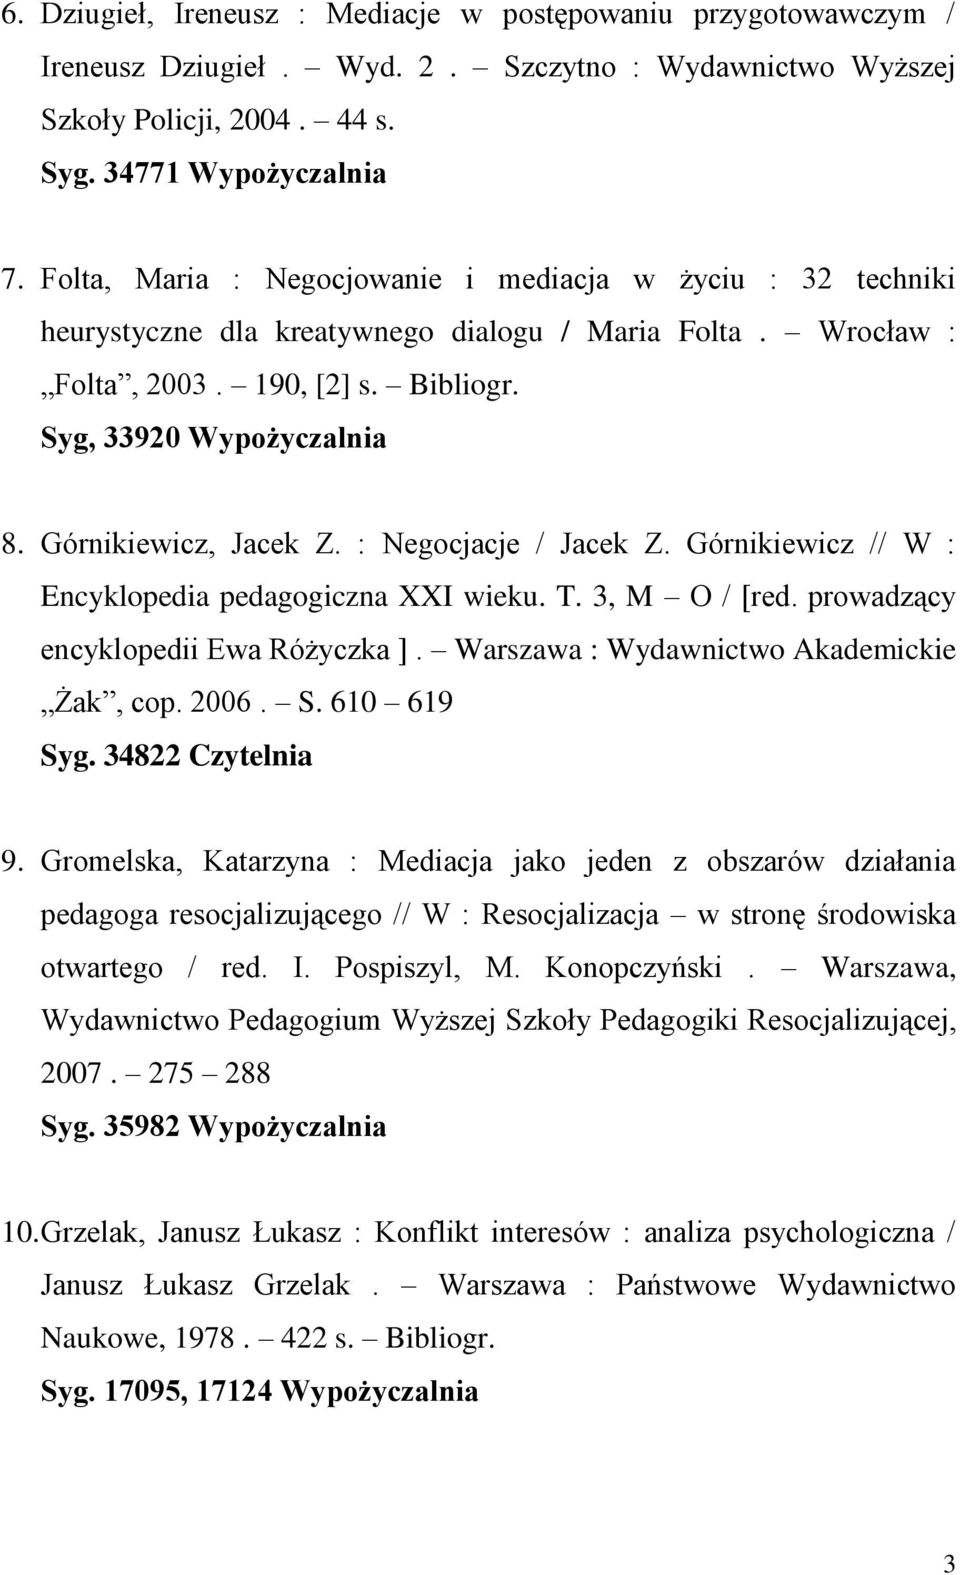 Górnikiewicz, Jacek Z. : Negocjacje / Jacek Z. Górnikiewicz // W : Encyklopedia pedagogiczna XXI wieku. T. 3, M O / [red. prowadzący encyklopedii Ewa Różyczka ].